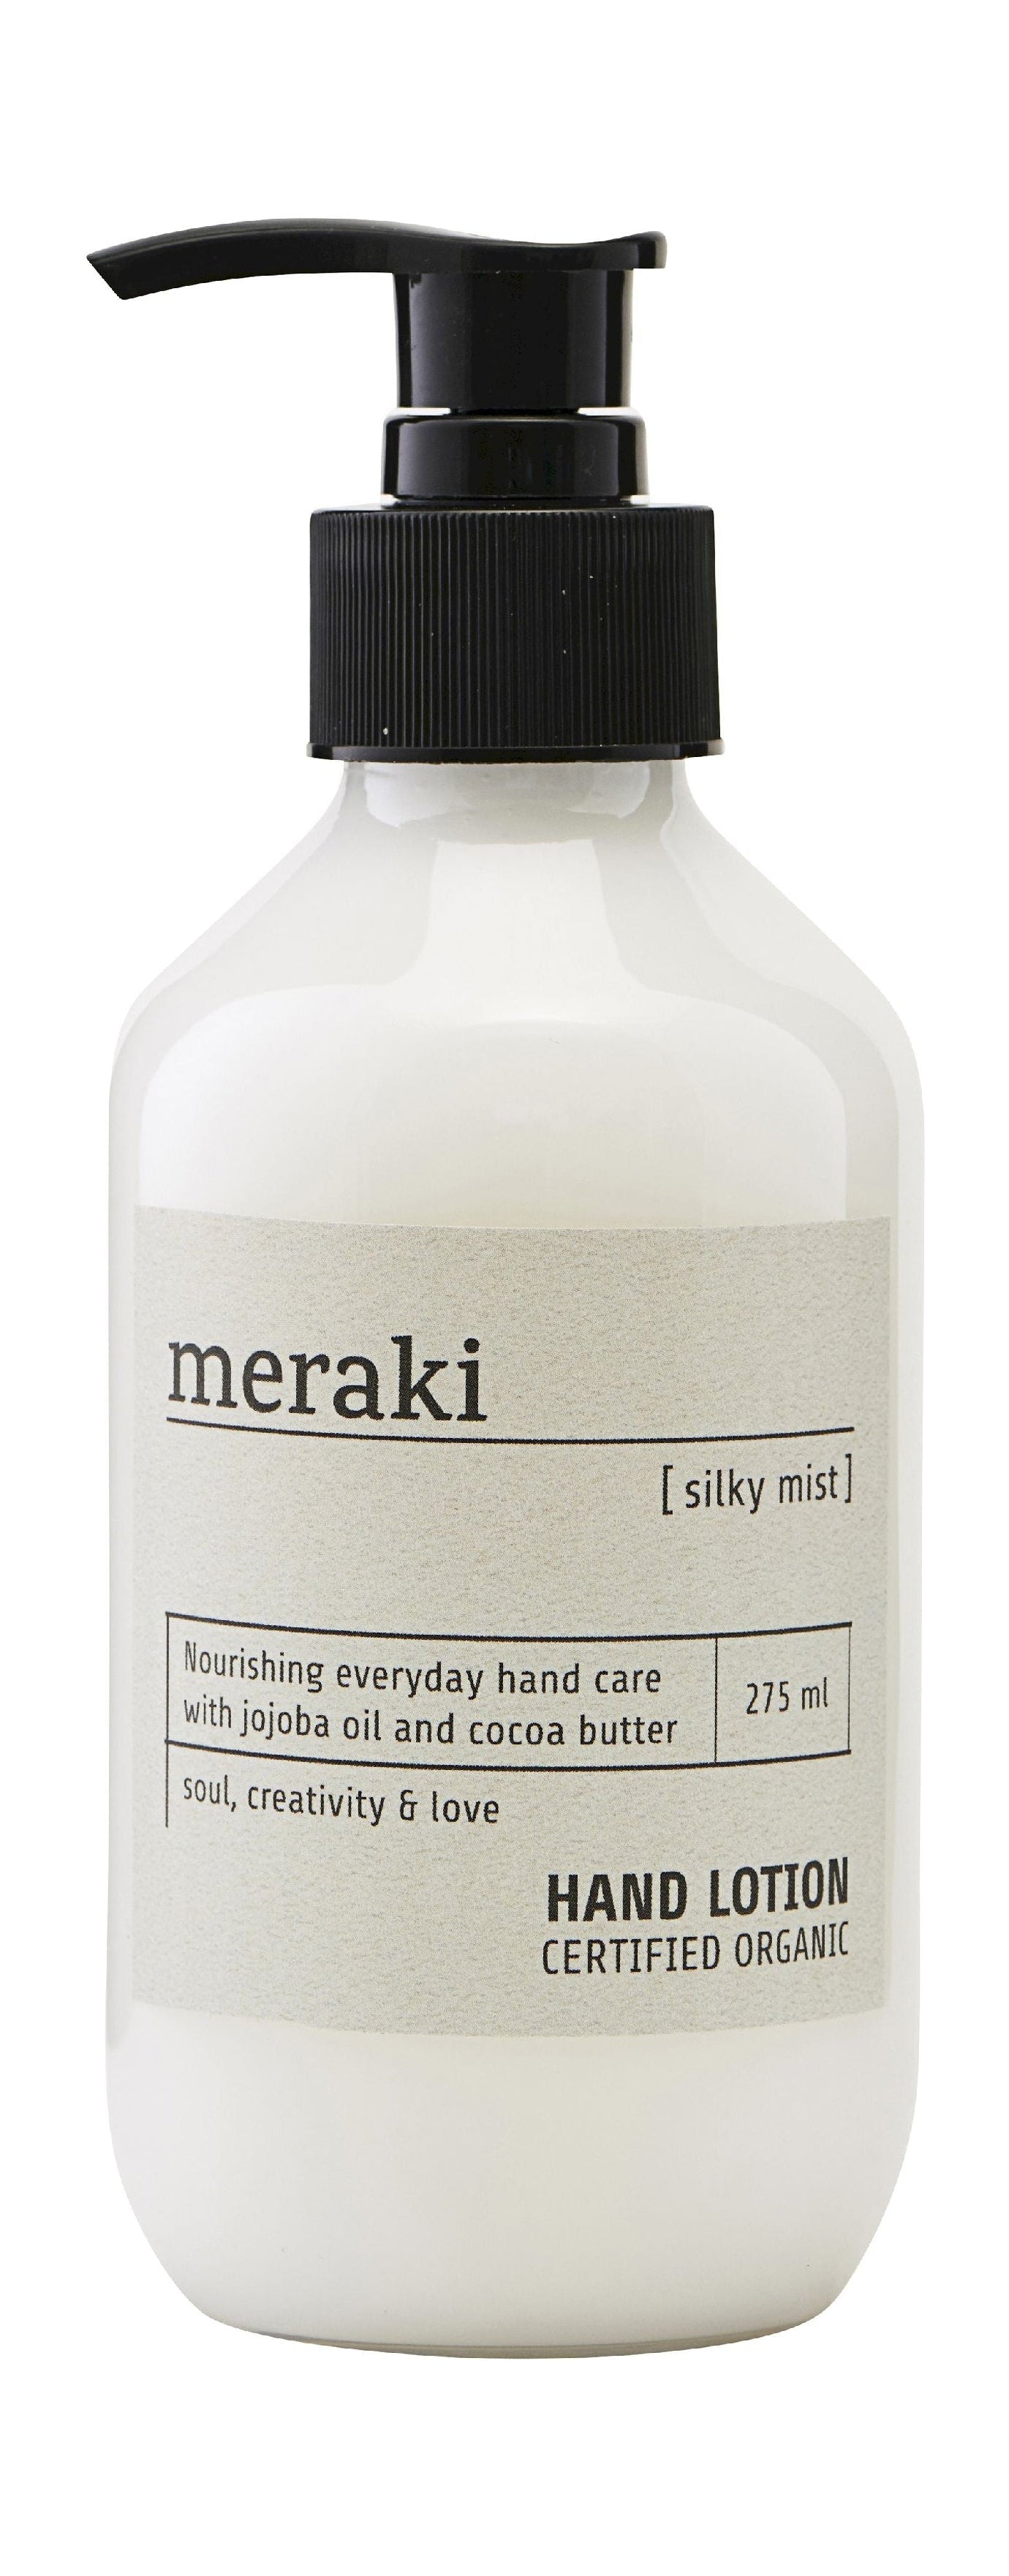 Meraki Hand Lotion 275 ml, Mist Silky